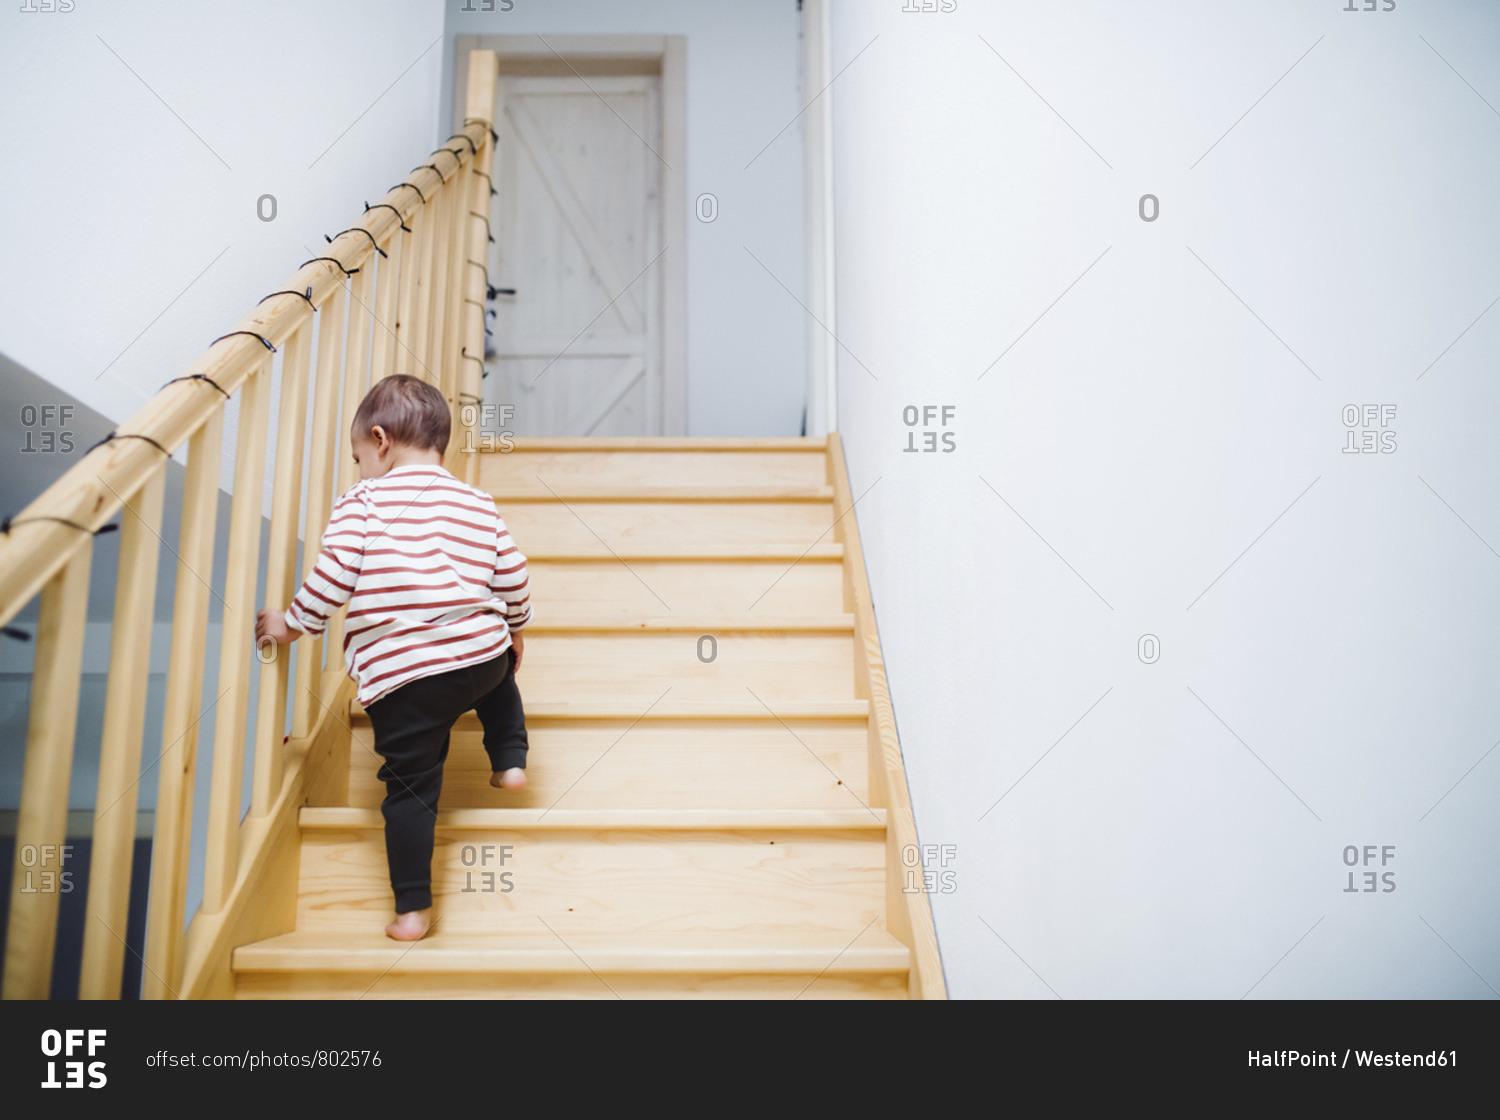 Иди сходи. С работы по ступенькам домой. A boy Walking up the Stairs. A boy coming down the Stairs. Up the down Staircase Элис.